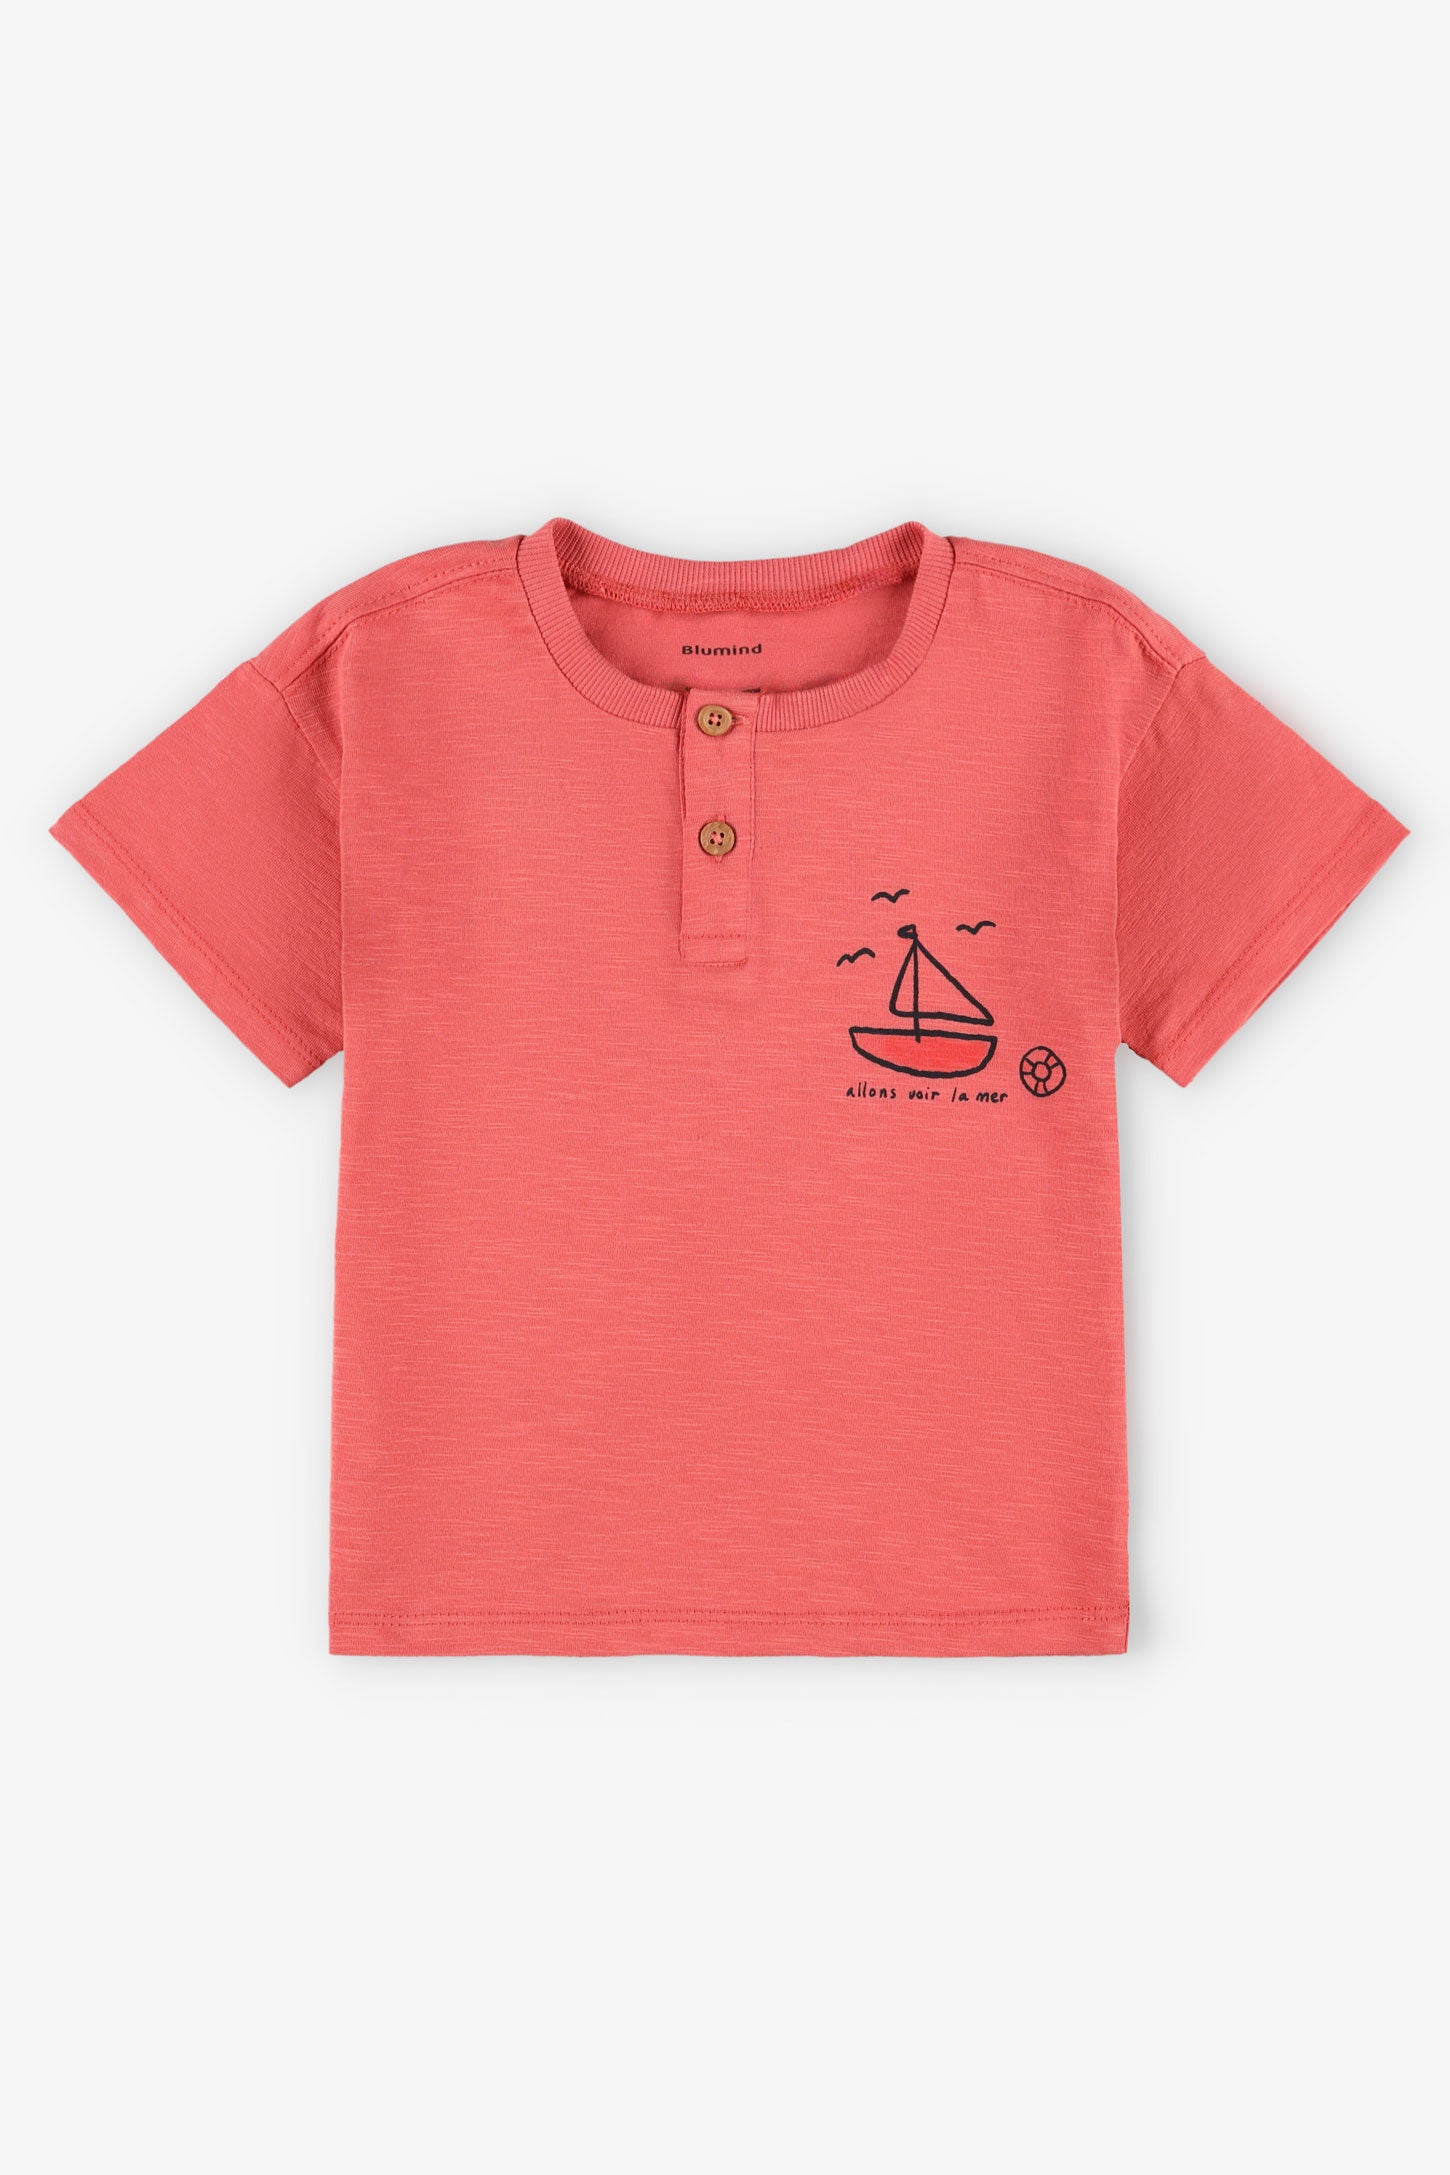 T-shirt col henley coton, 2T-3T - Bébé garçon && ROSE